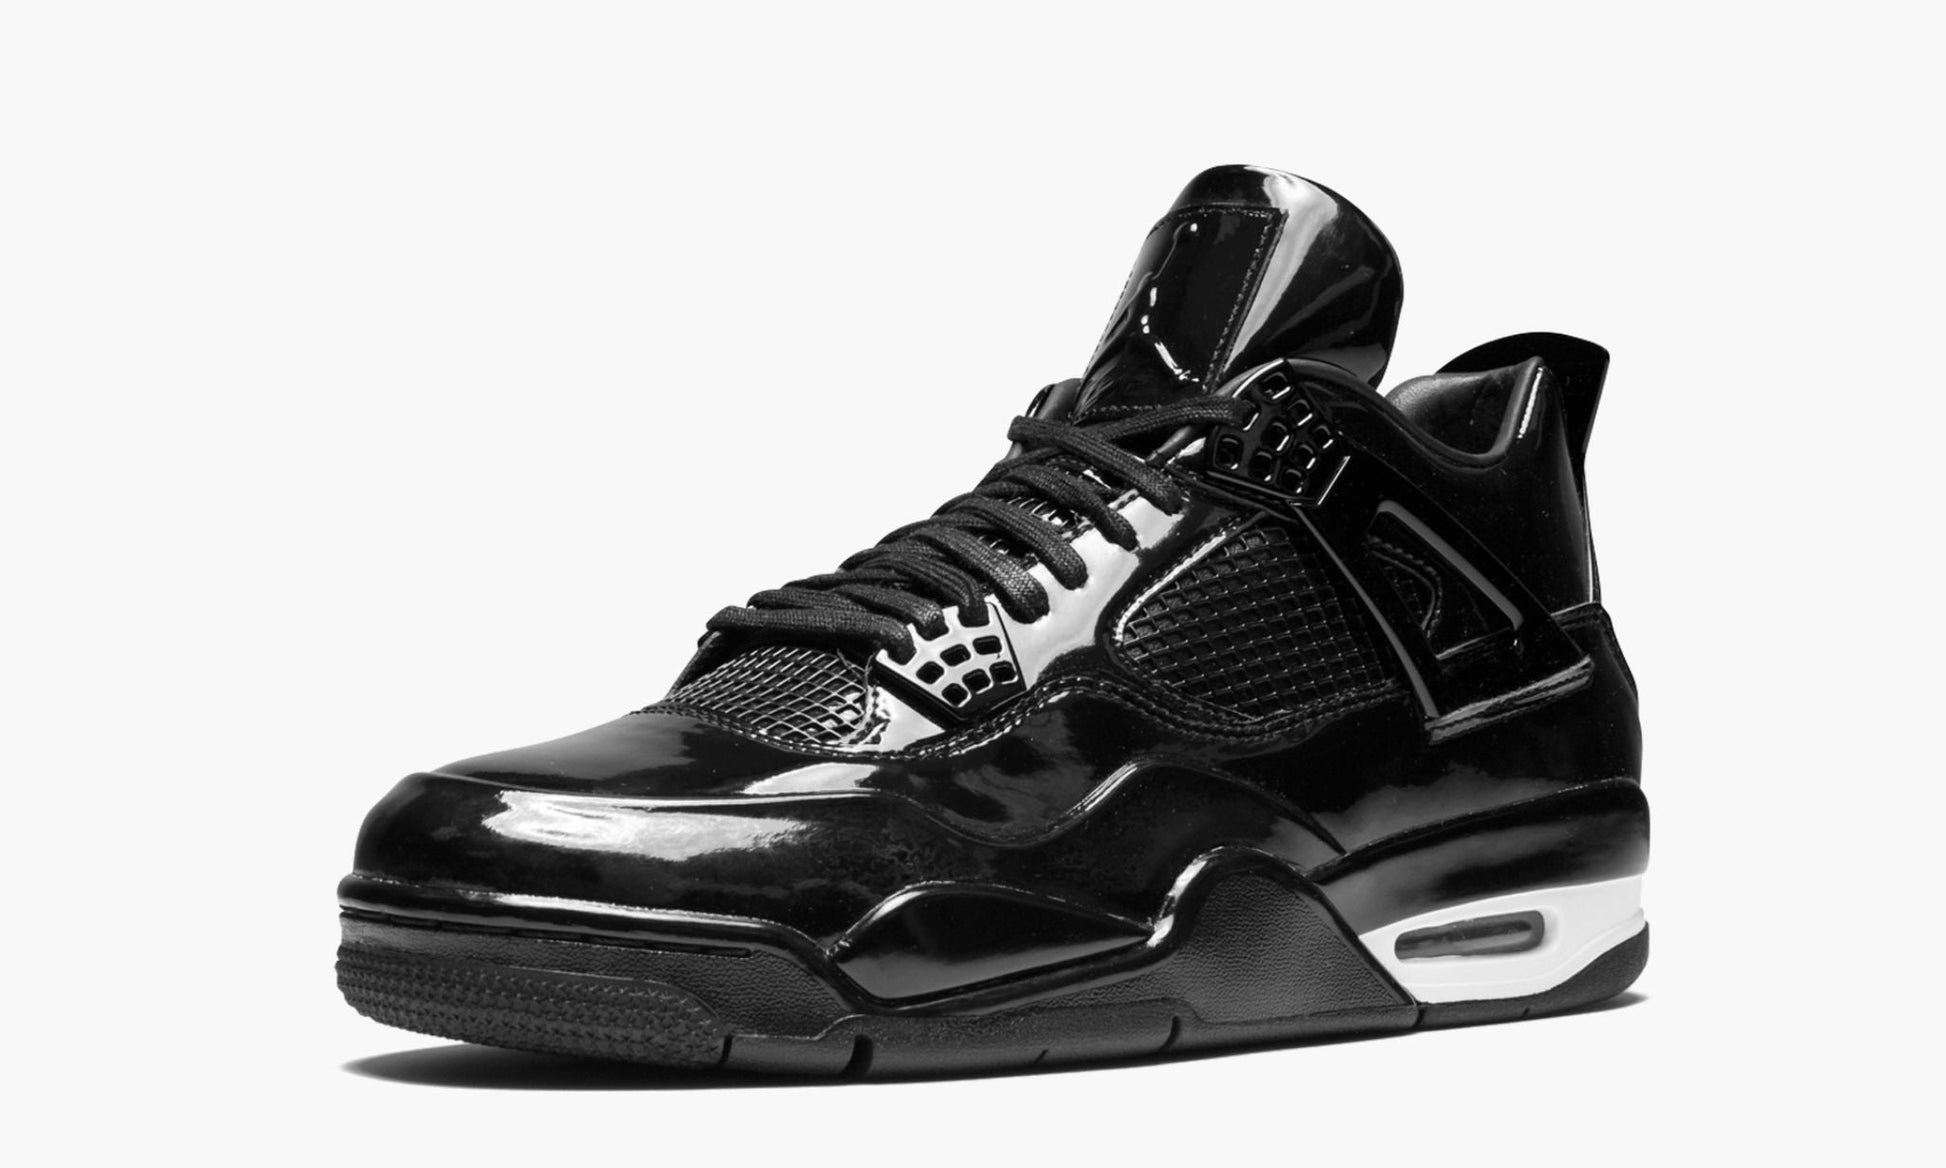 Air Jordan 4 11Lab4 "Black Patent"